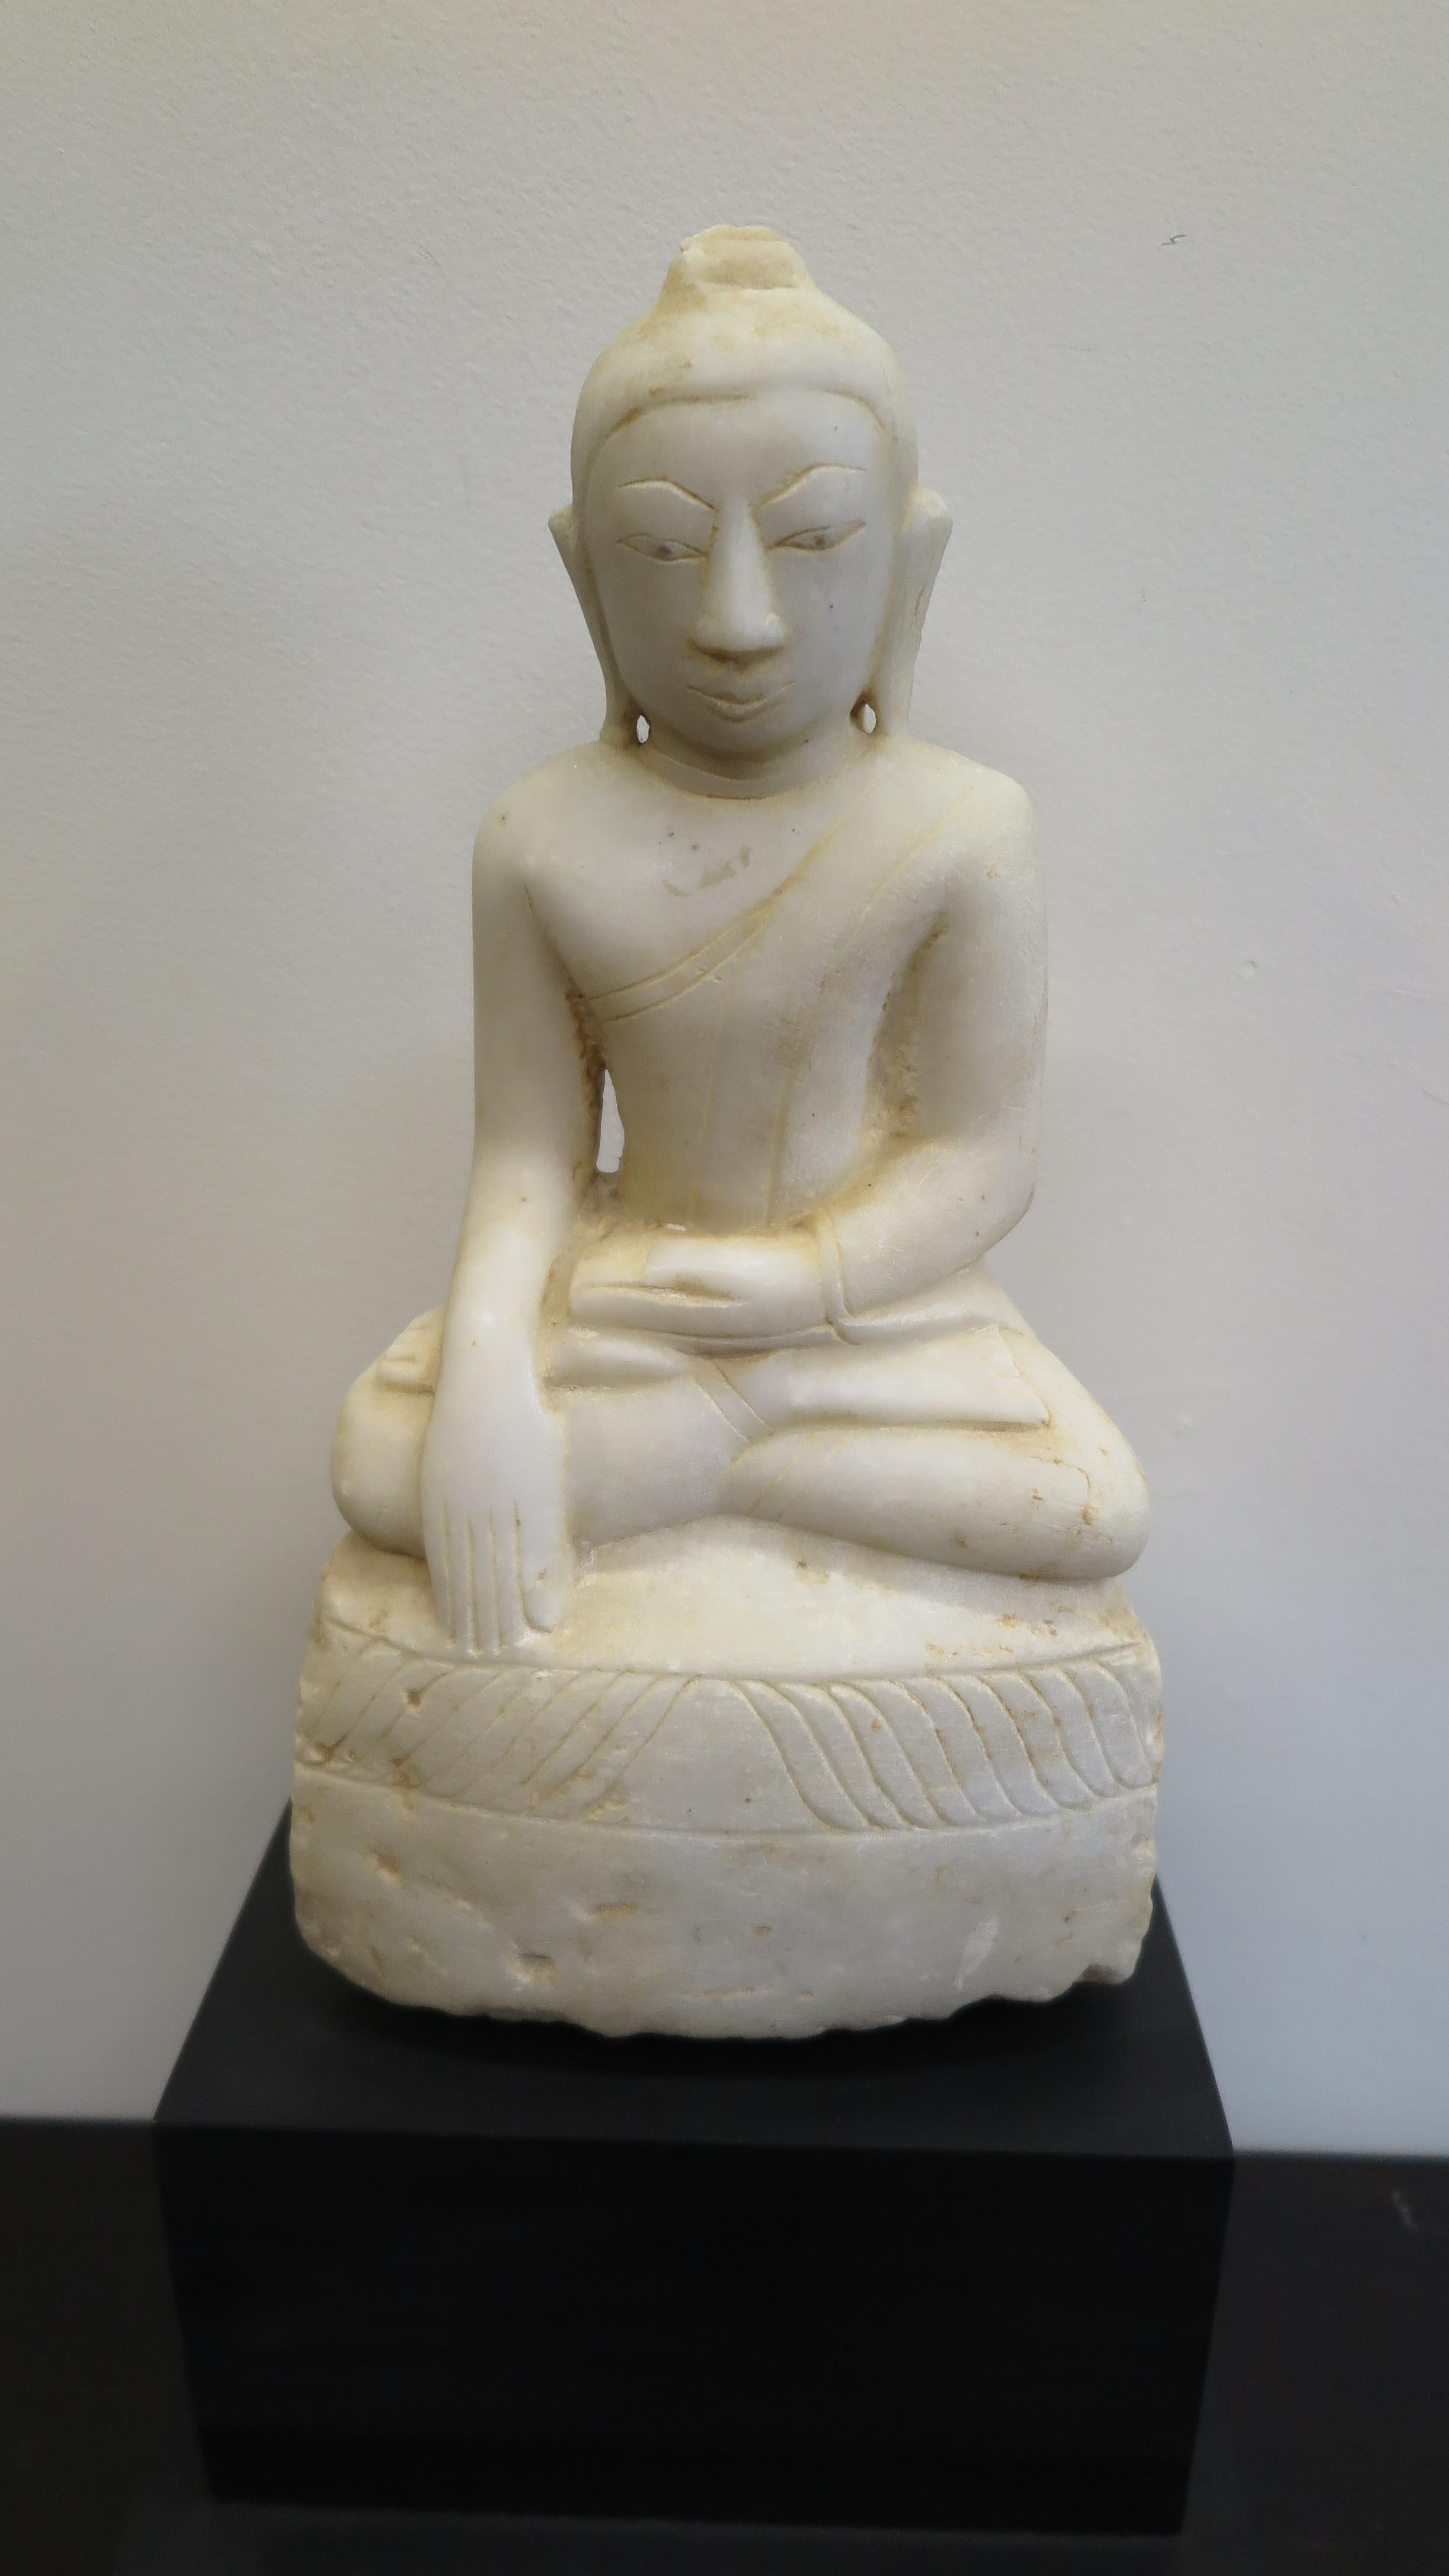 Statue de Bouddha du 18e/19e siècle, sculptée en albâtre. Statue de Bouddha Shan birman 1800ca, collectée dans l'État Shan du Myanmar en 1998. Les jambes croisées, la main gauche sur les genoux et la main droite dirigée vers le sol, la paume tournée